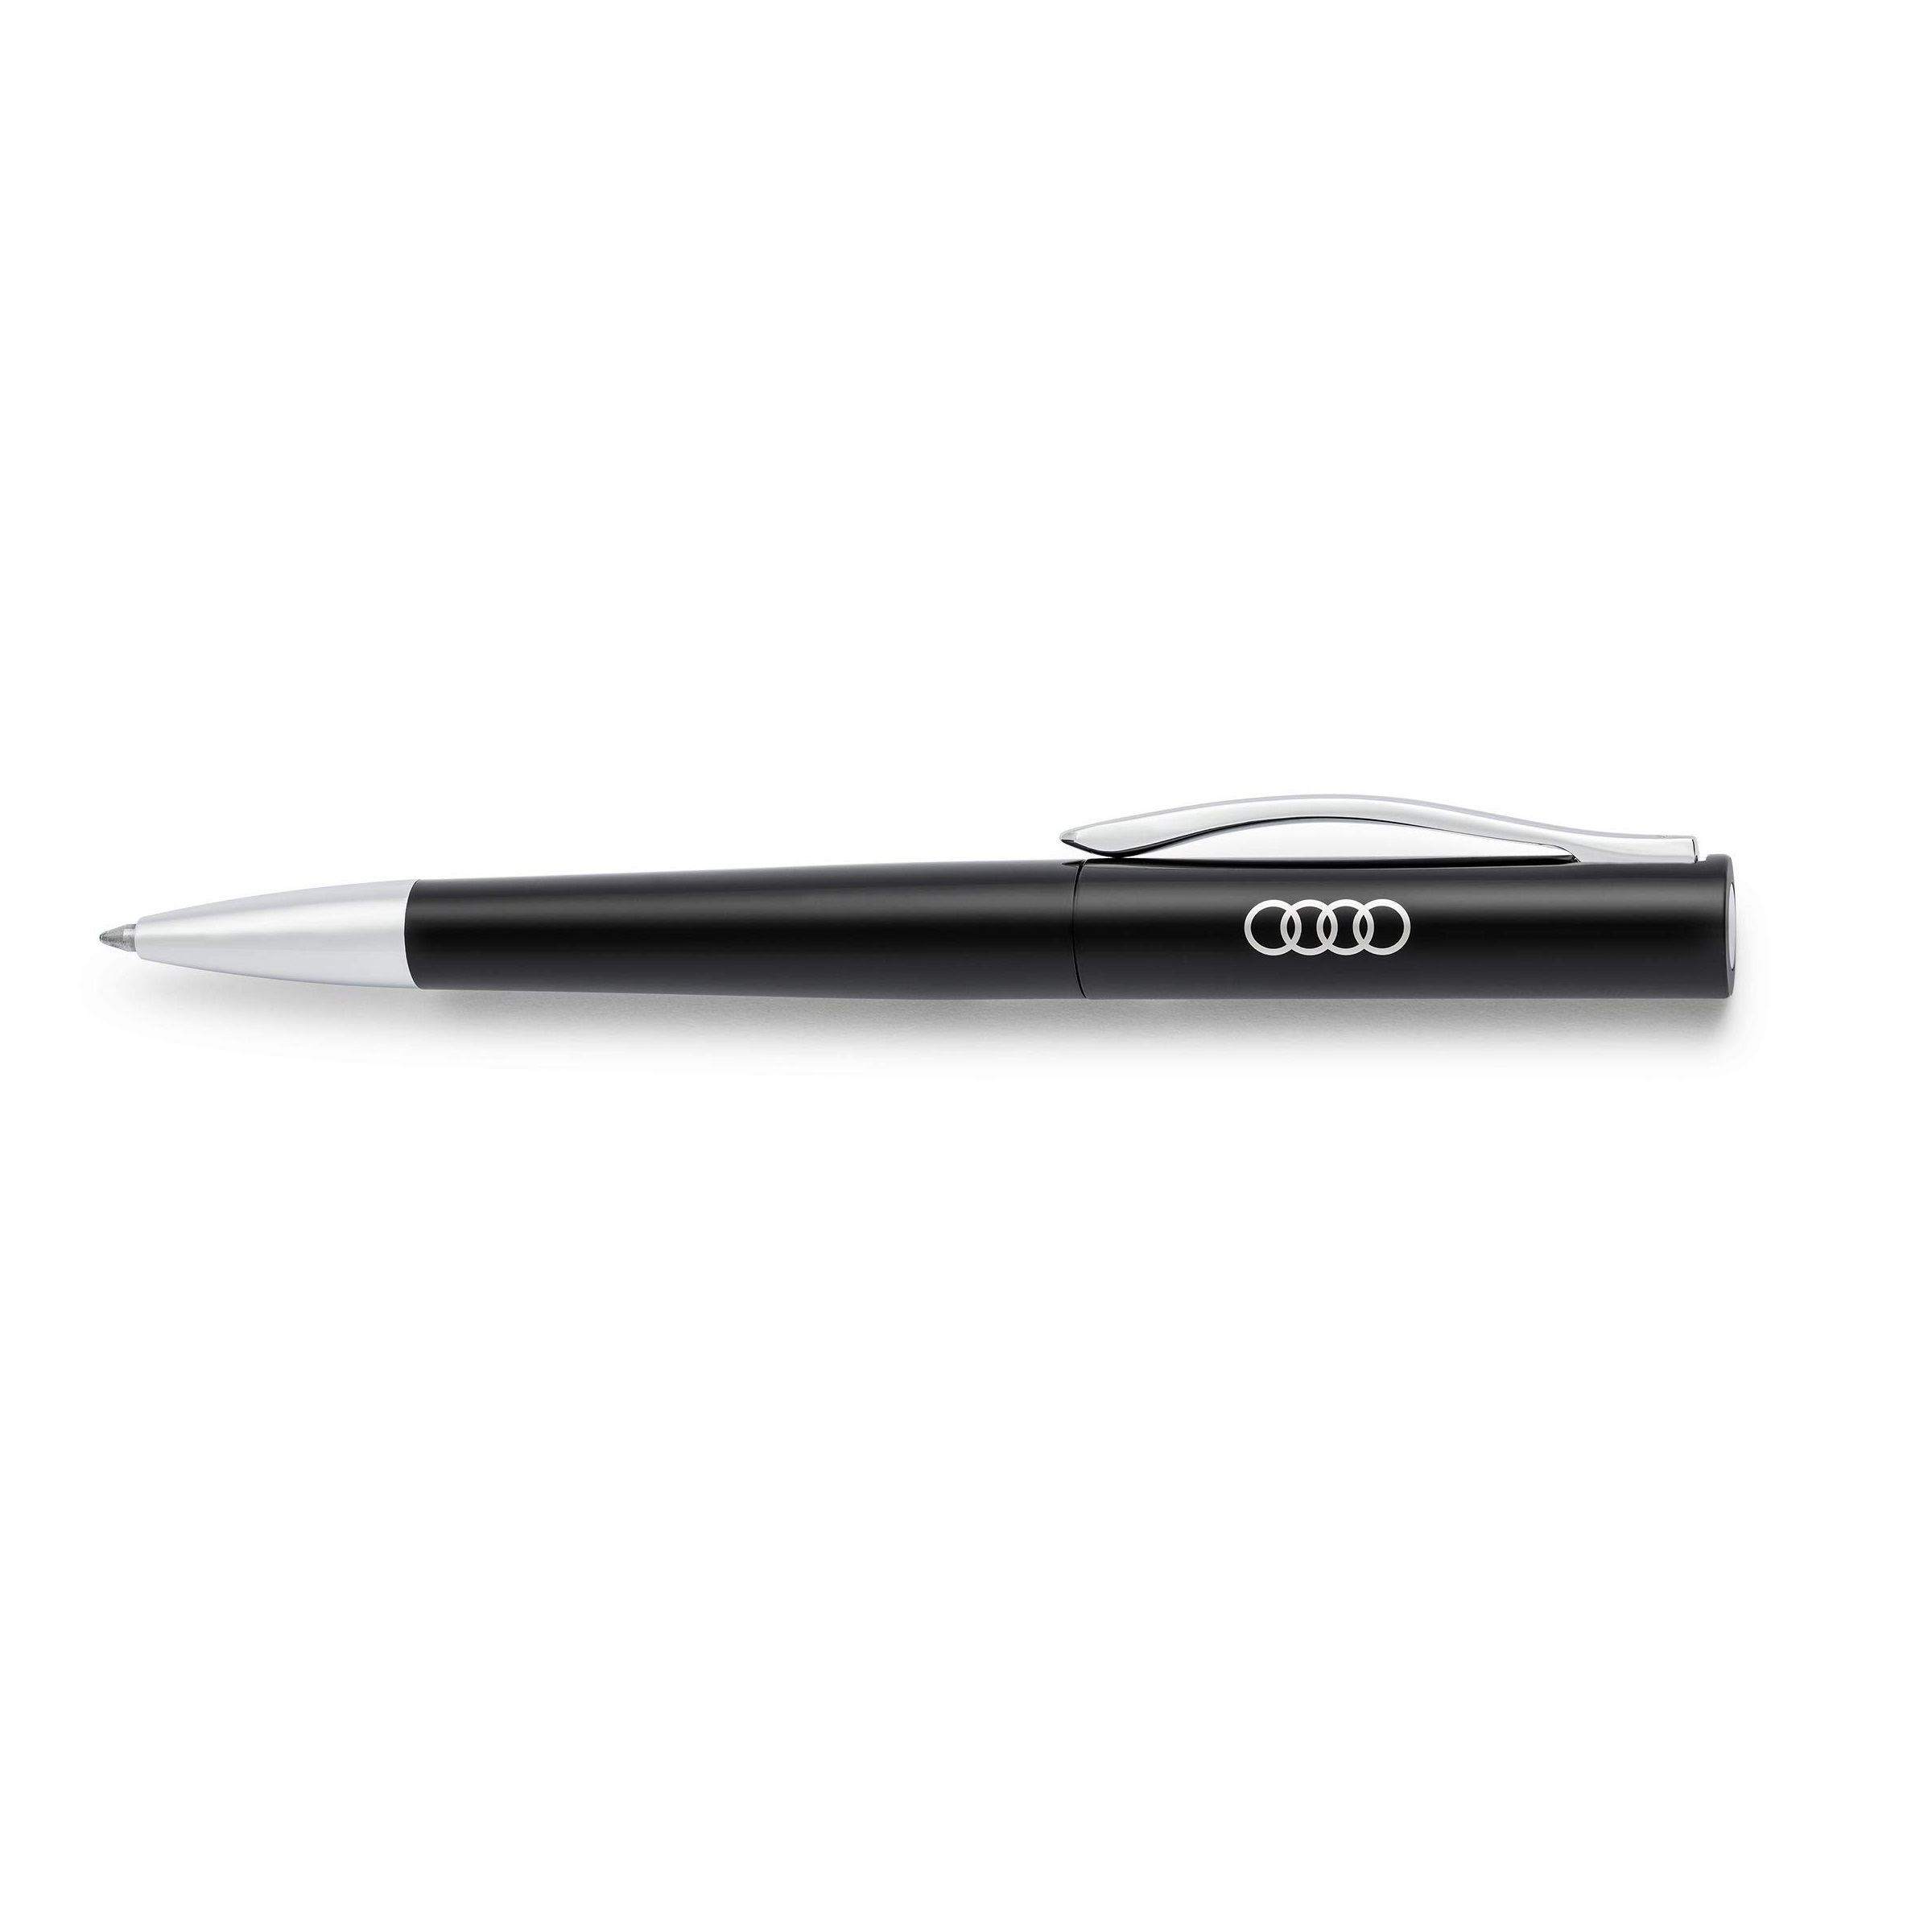 ปากกาลูกลื่น Audi Ballpoint Pen, Black